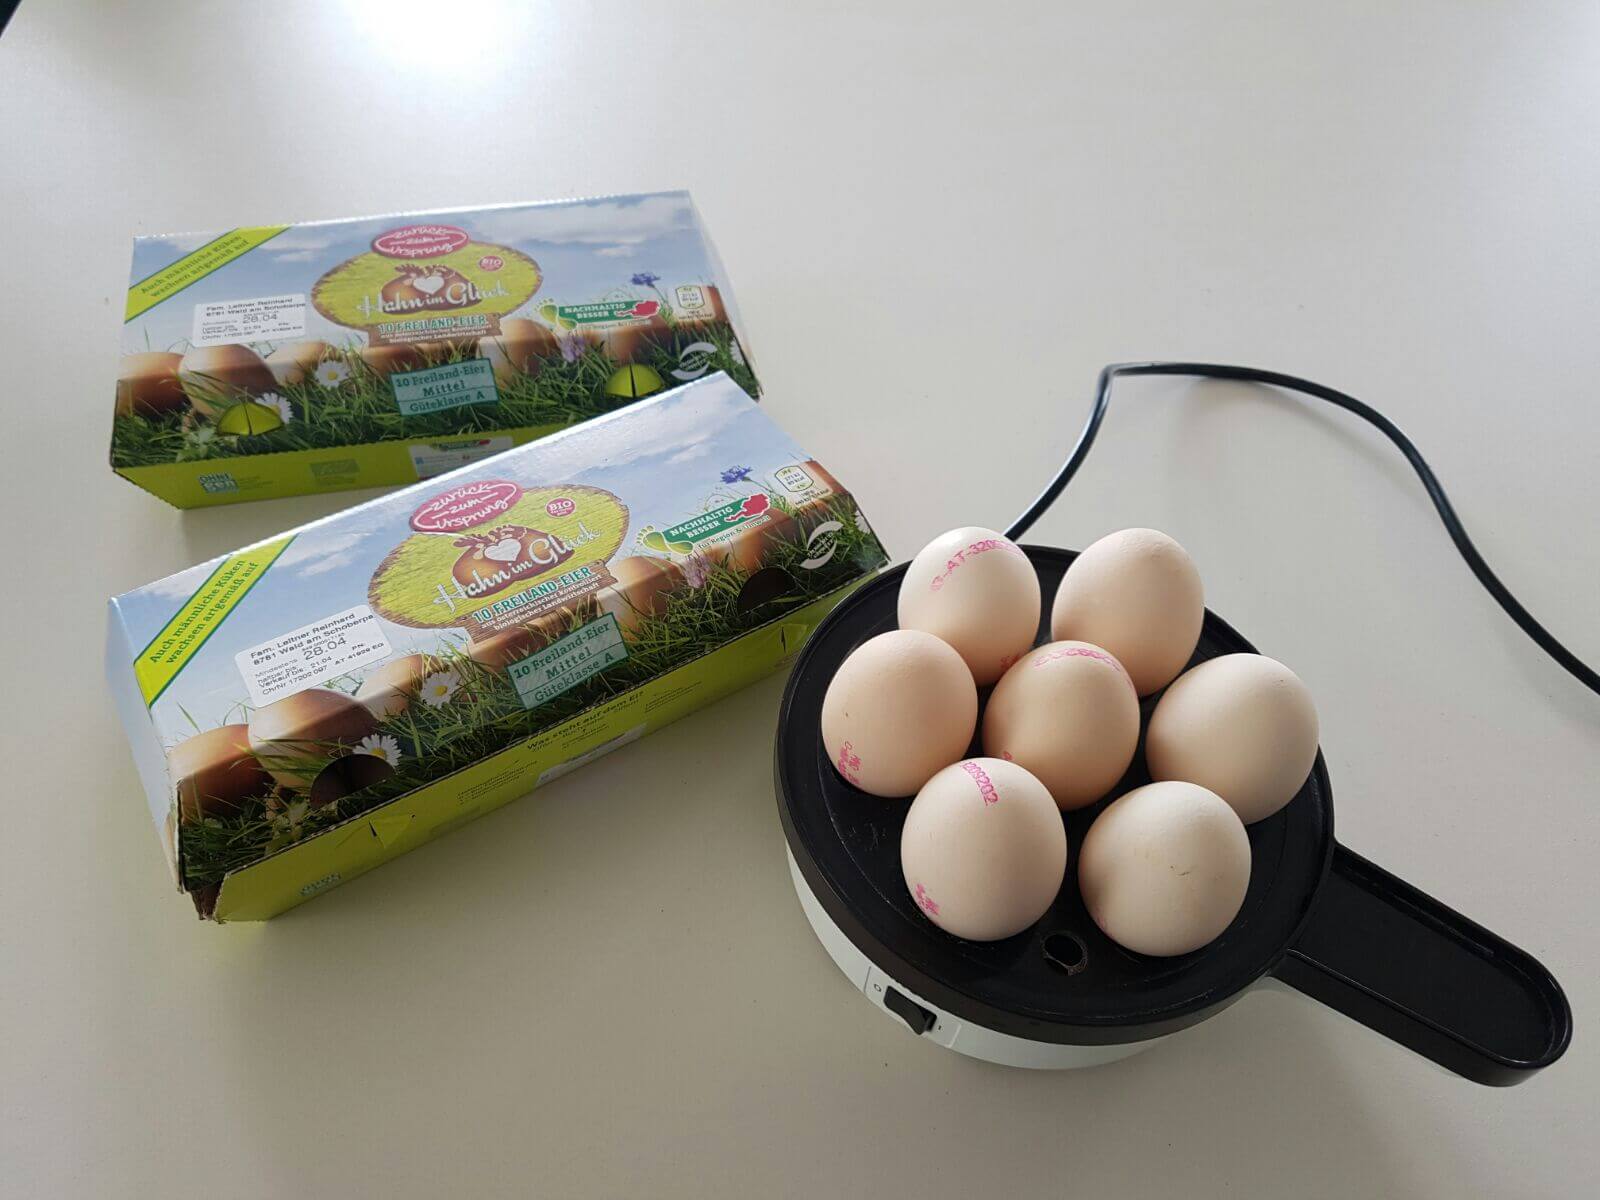 Was brauchen wir: weiße bzw. helle Eier, Eierkocher